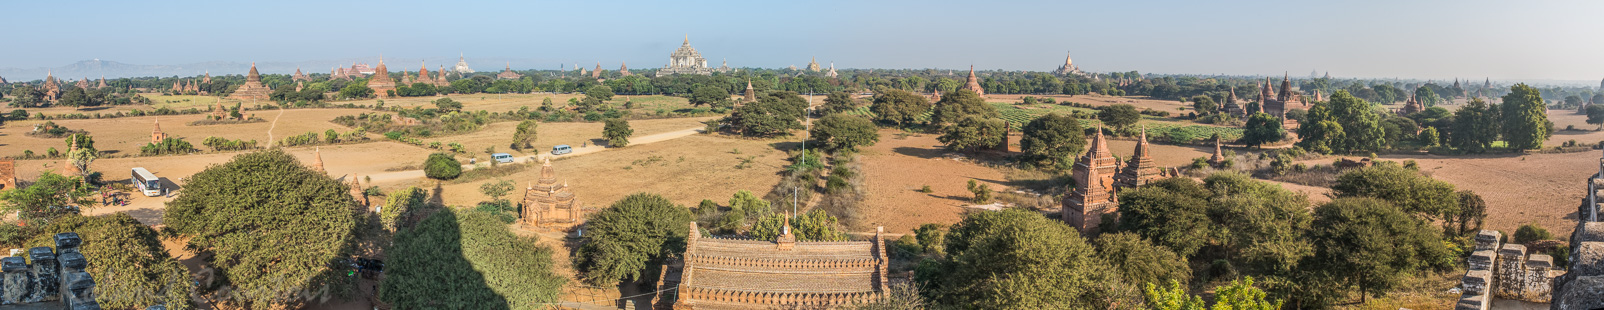 Panorama de Bagan. Elle fut au XIe siècle la plus grande métropole bouddhique du monde. Seuls les bâtiments construits en briques sont bien conservés.